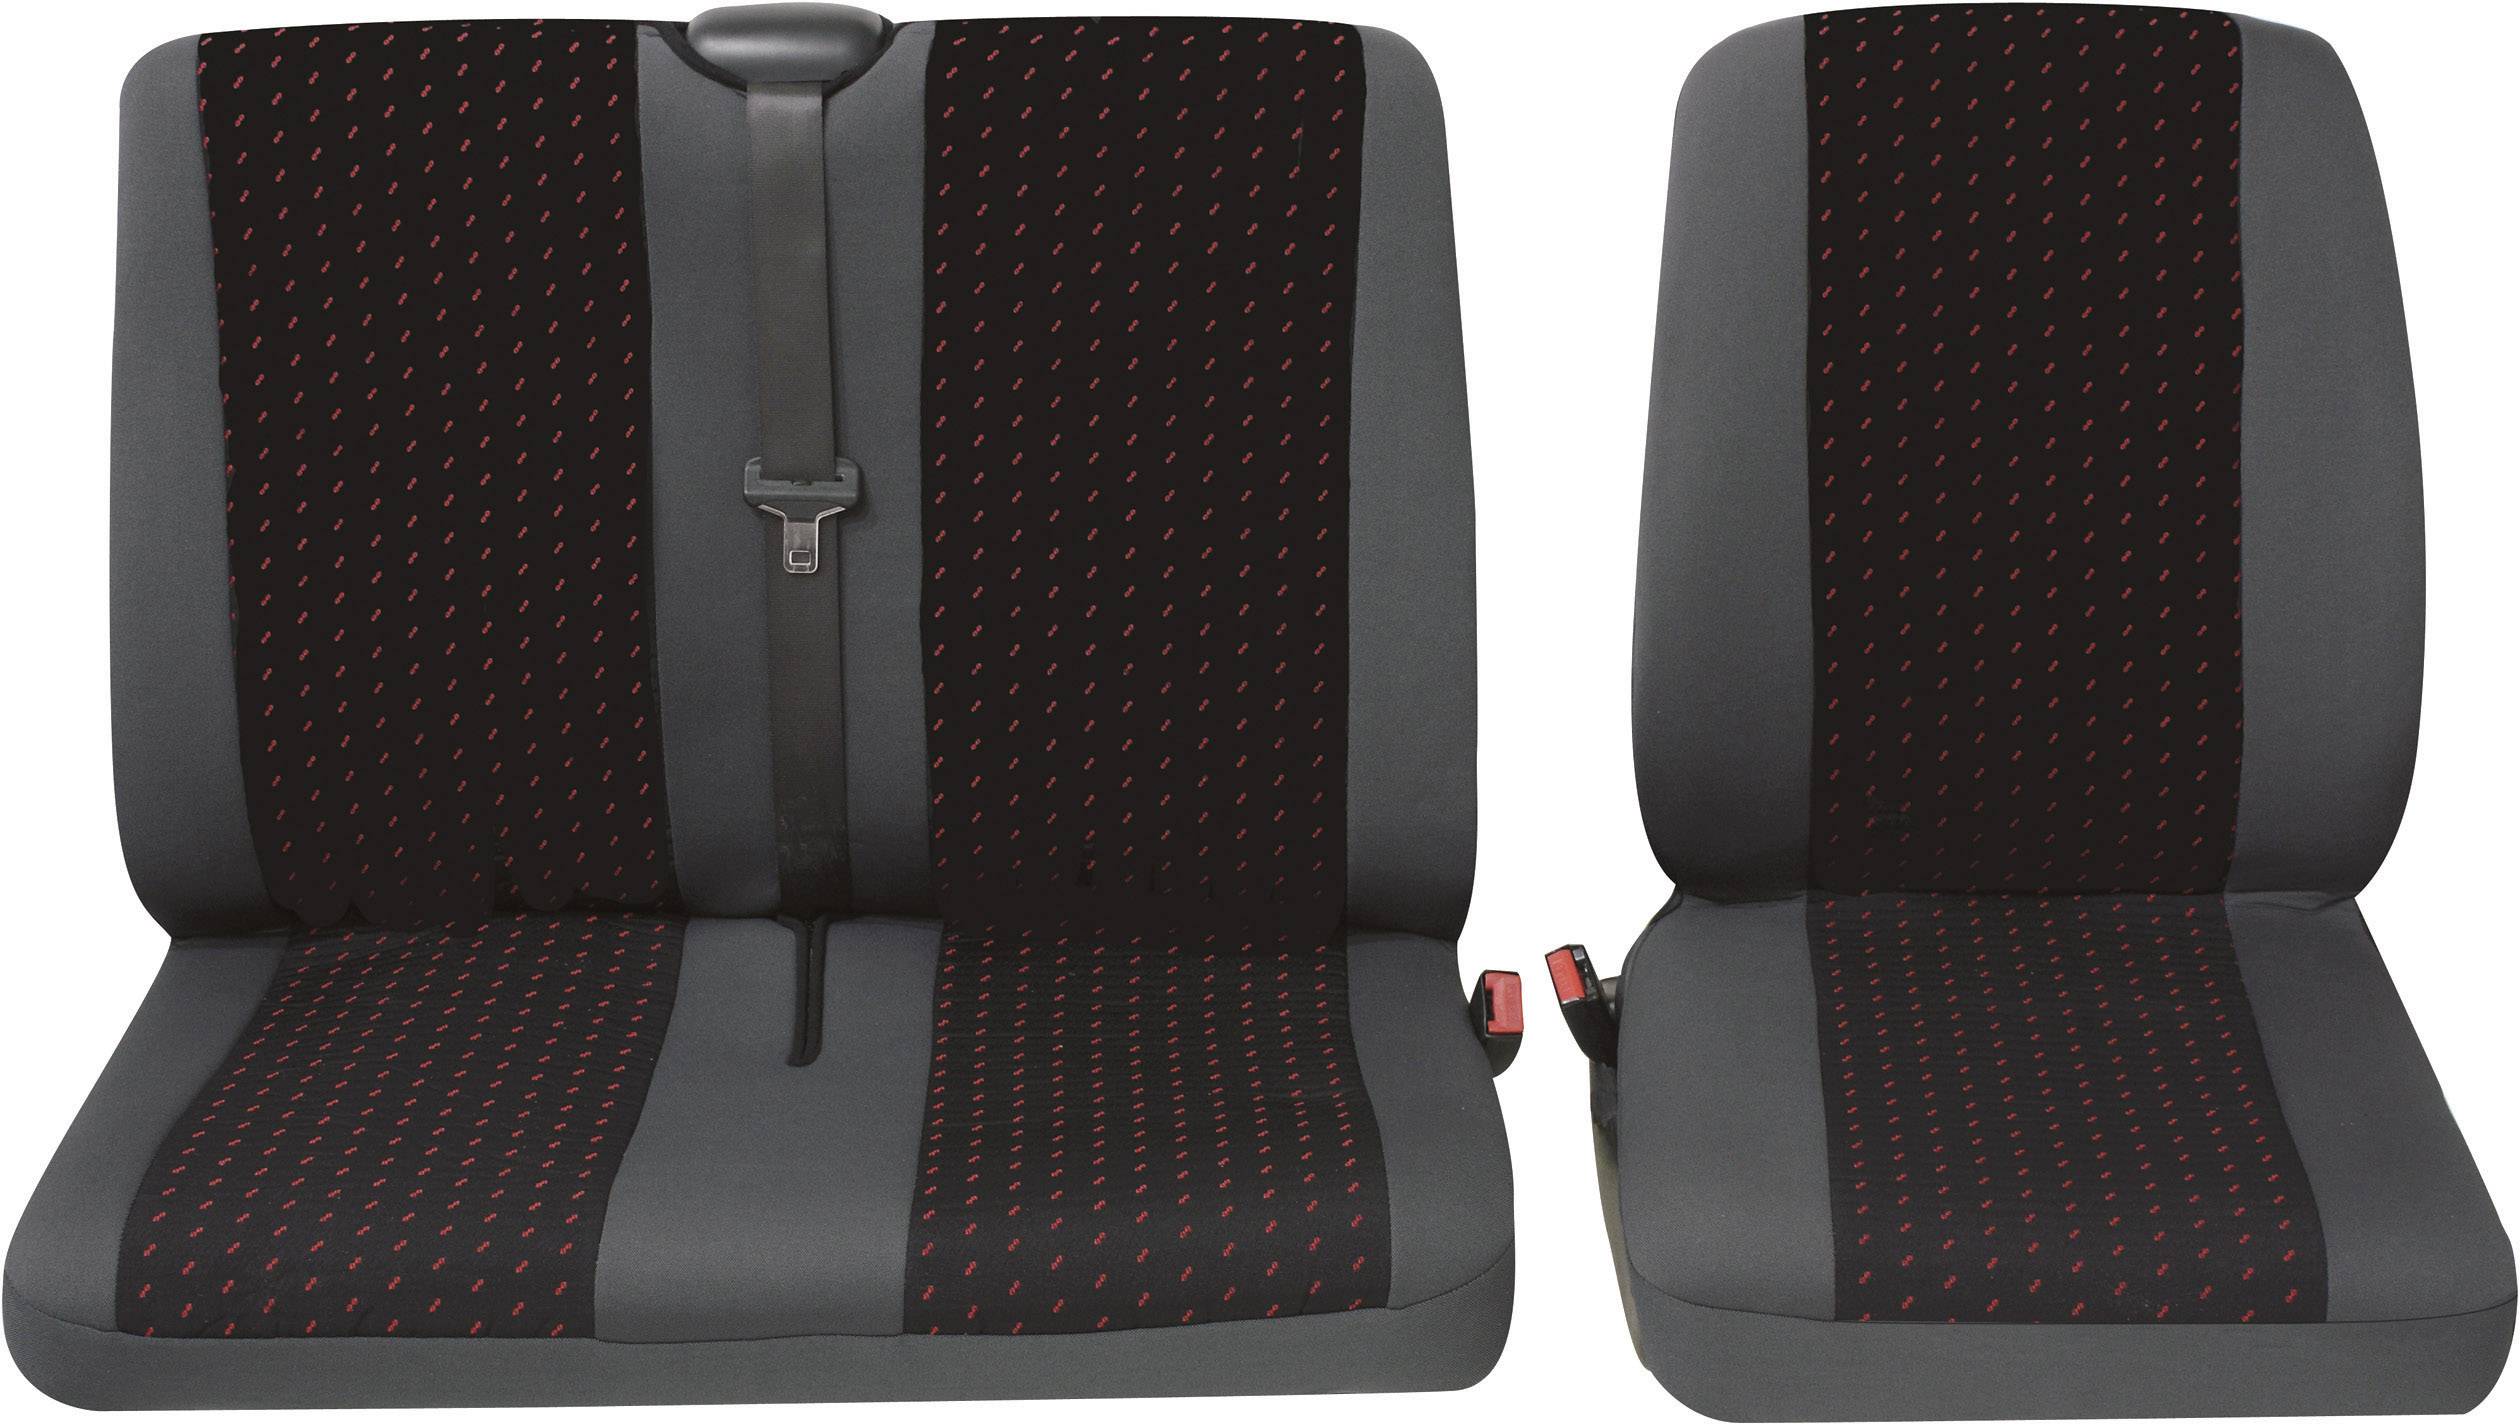 Petex 30071912 Profi 1 Sitzbezug 2teilig Polyester Rot, Anthrazit Fahrersitz,  Doppelsitz kaufen